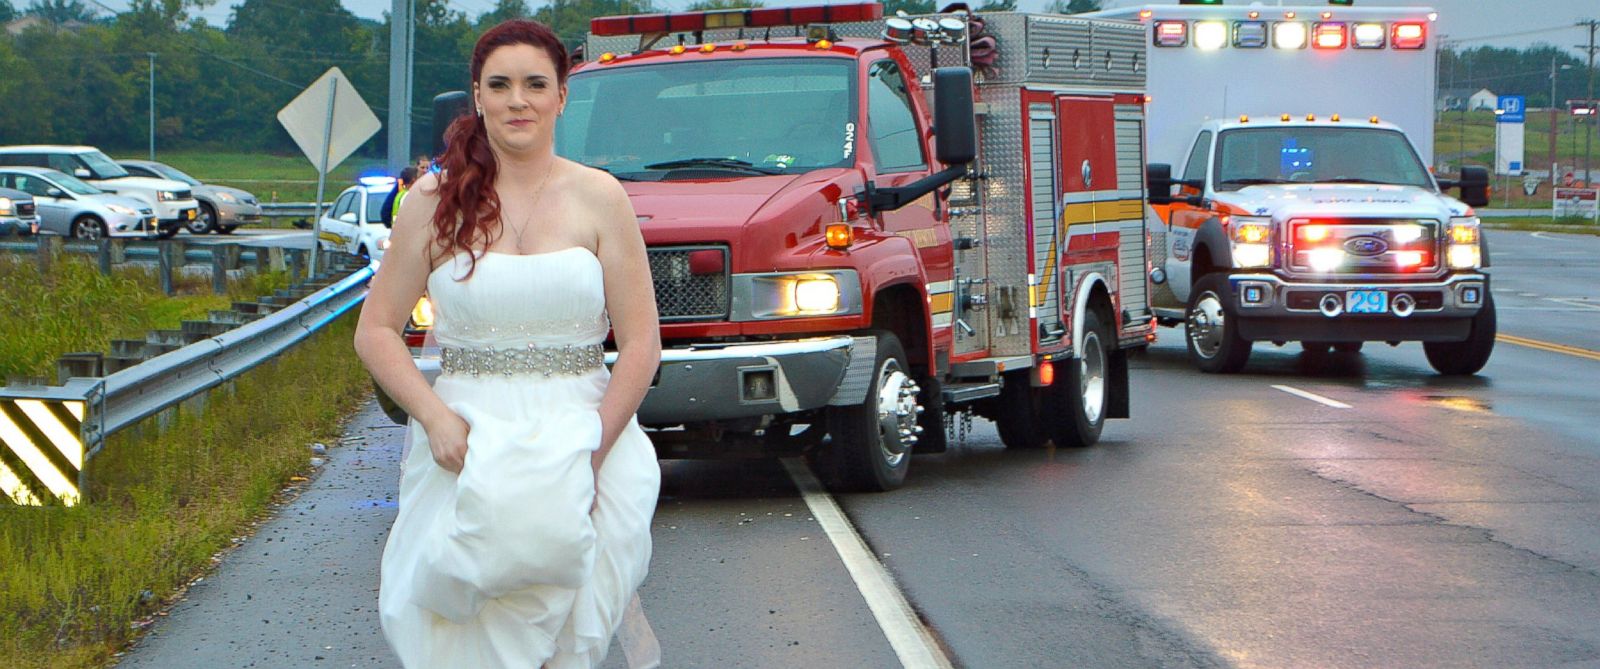 Menyasszonyi ruhában rohant el az ápolónő, hogy szerettei életét mentse